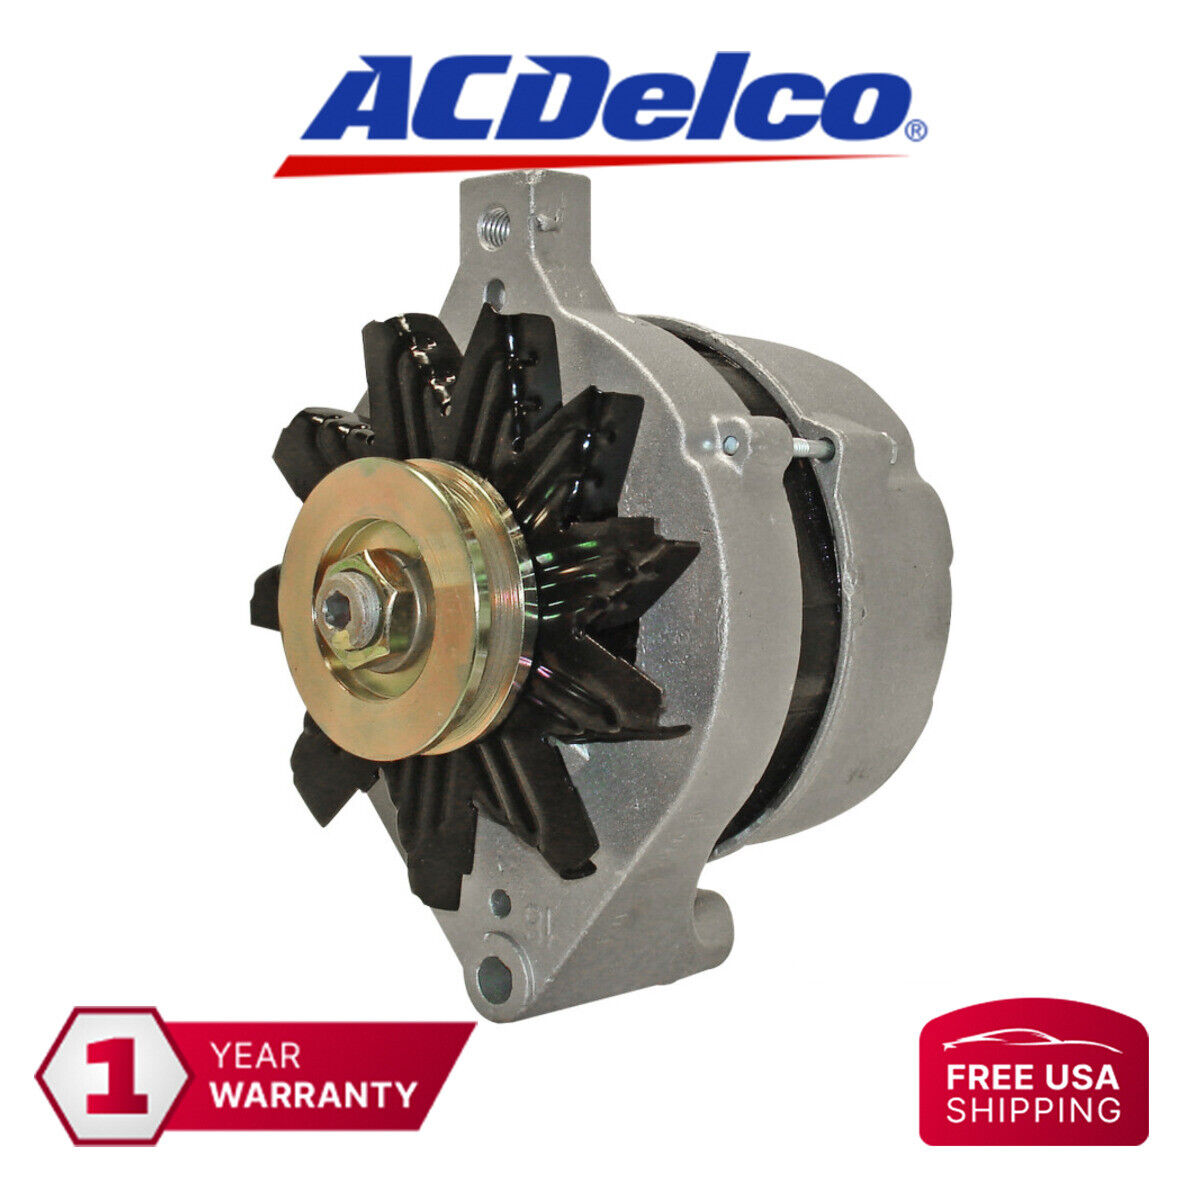 Remanufactured ACDelco Alternator 334-2099